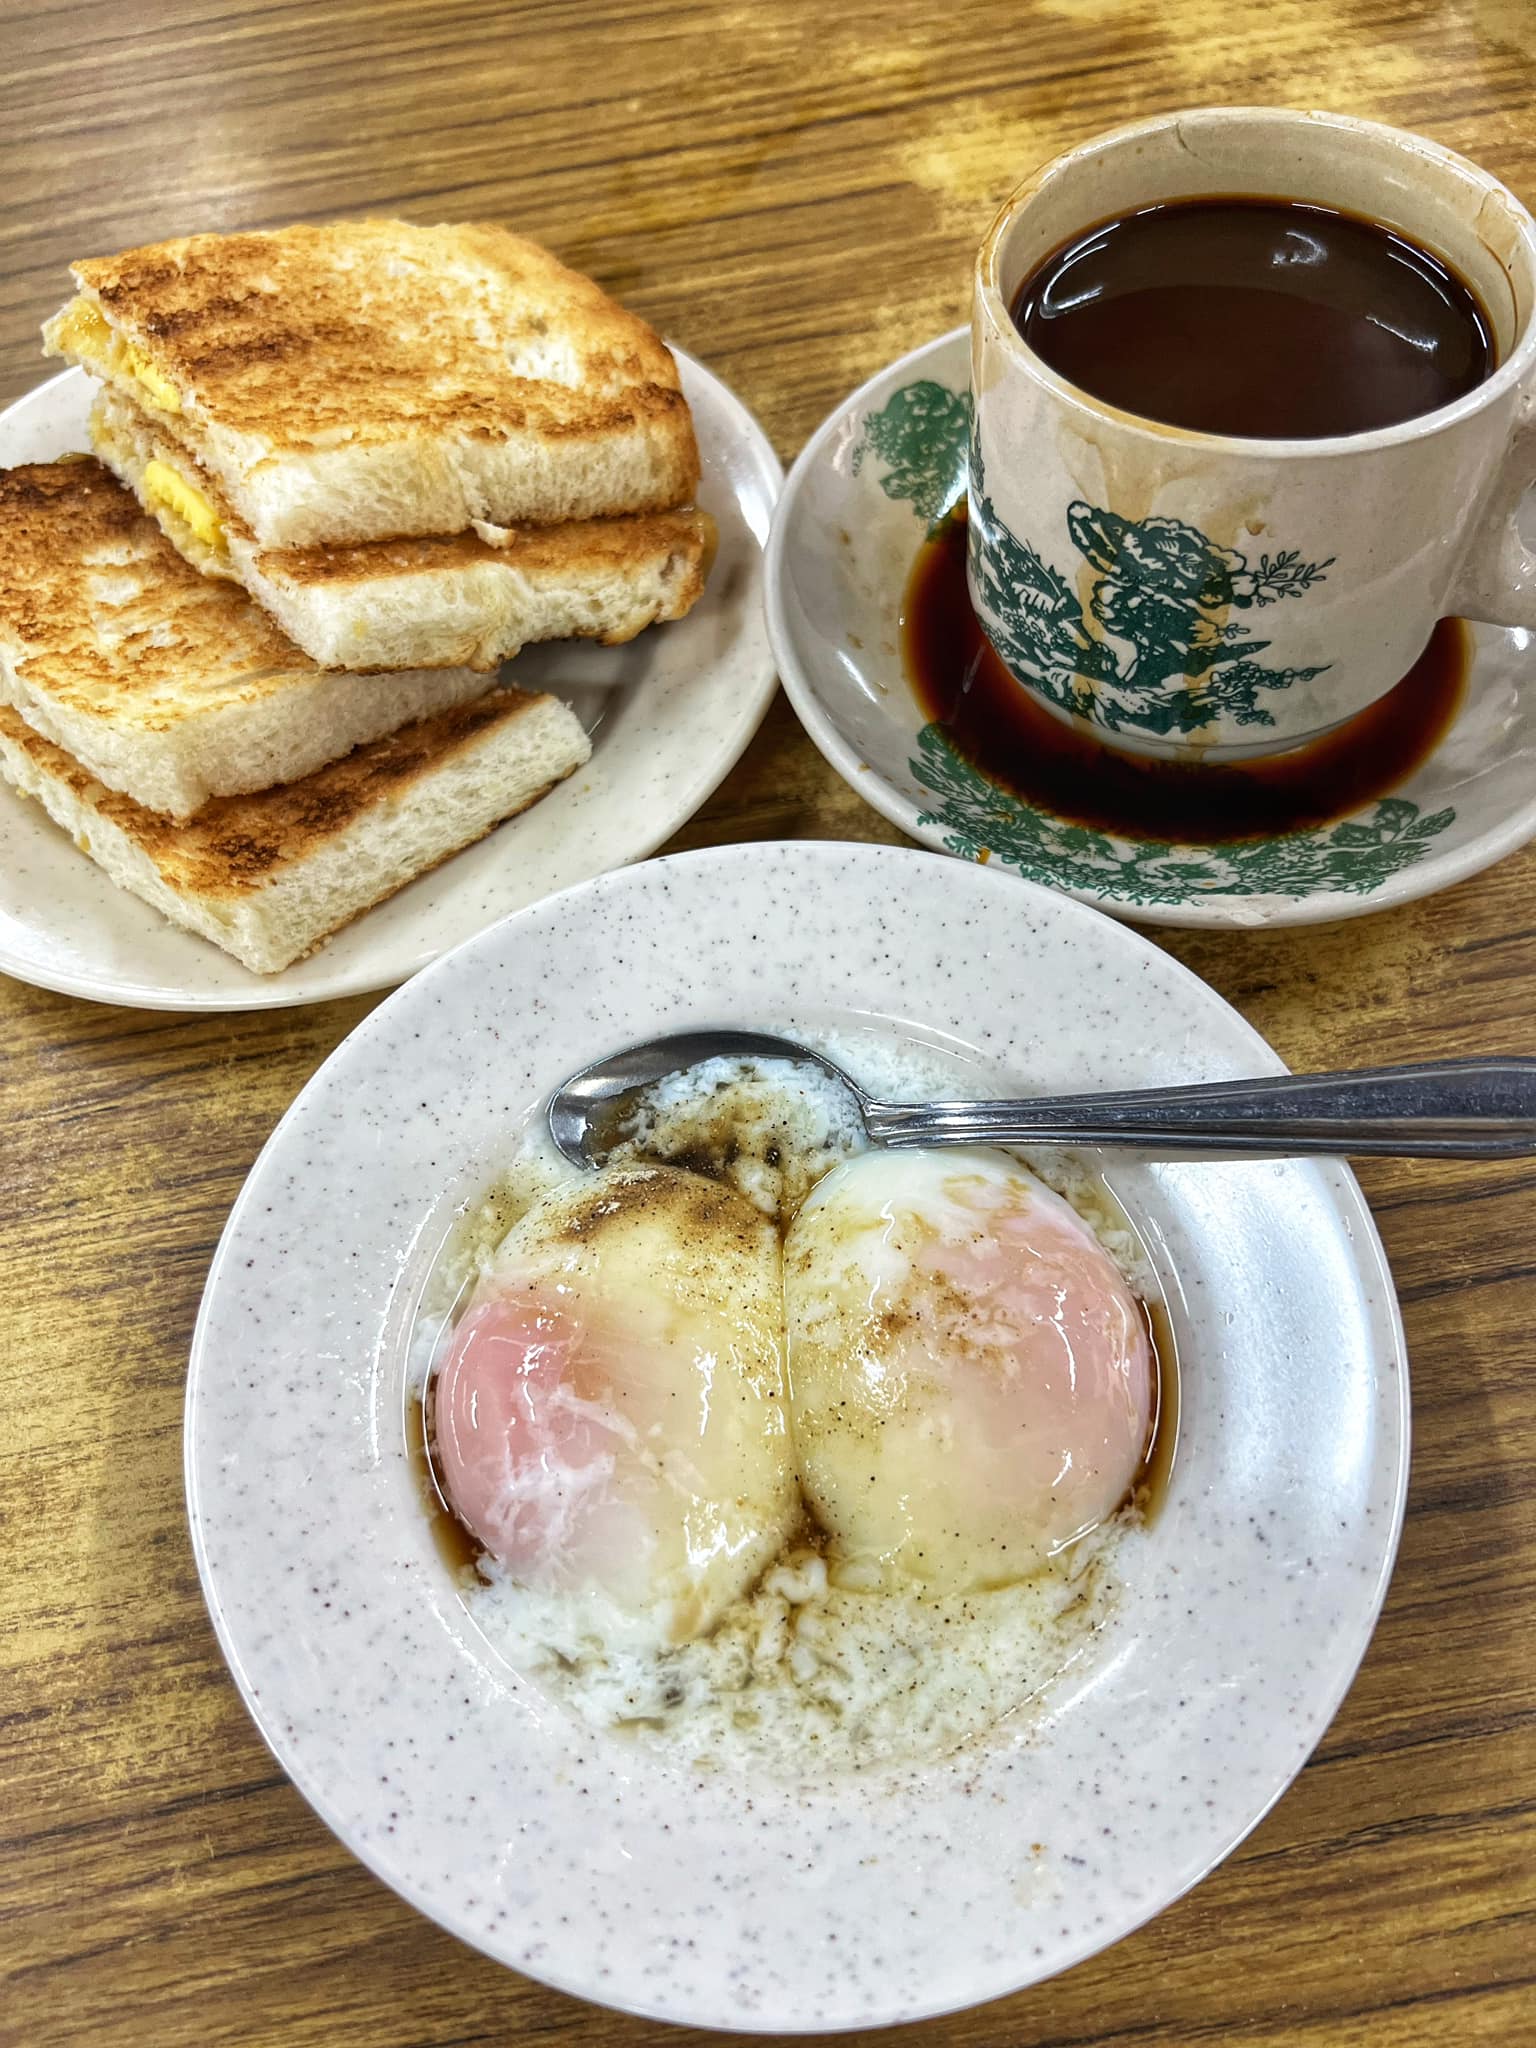 Kedai Kopi Kheng Juan Hin Toast and Eggs